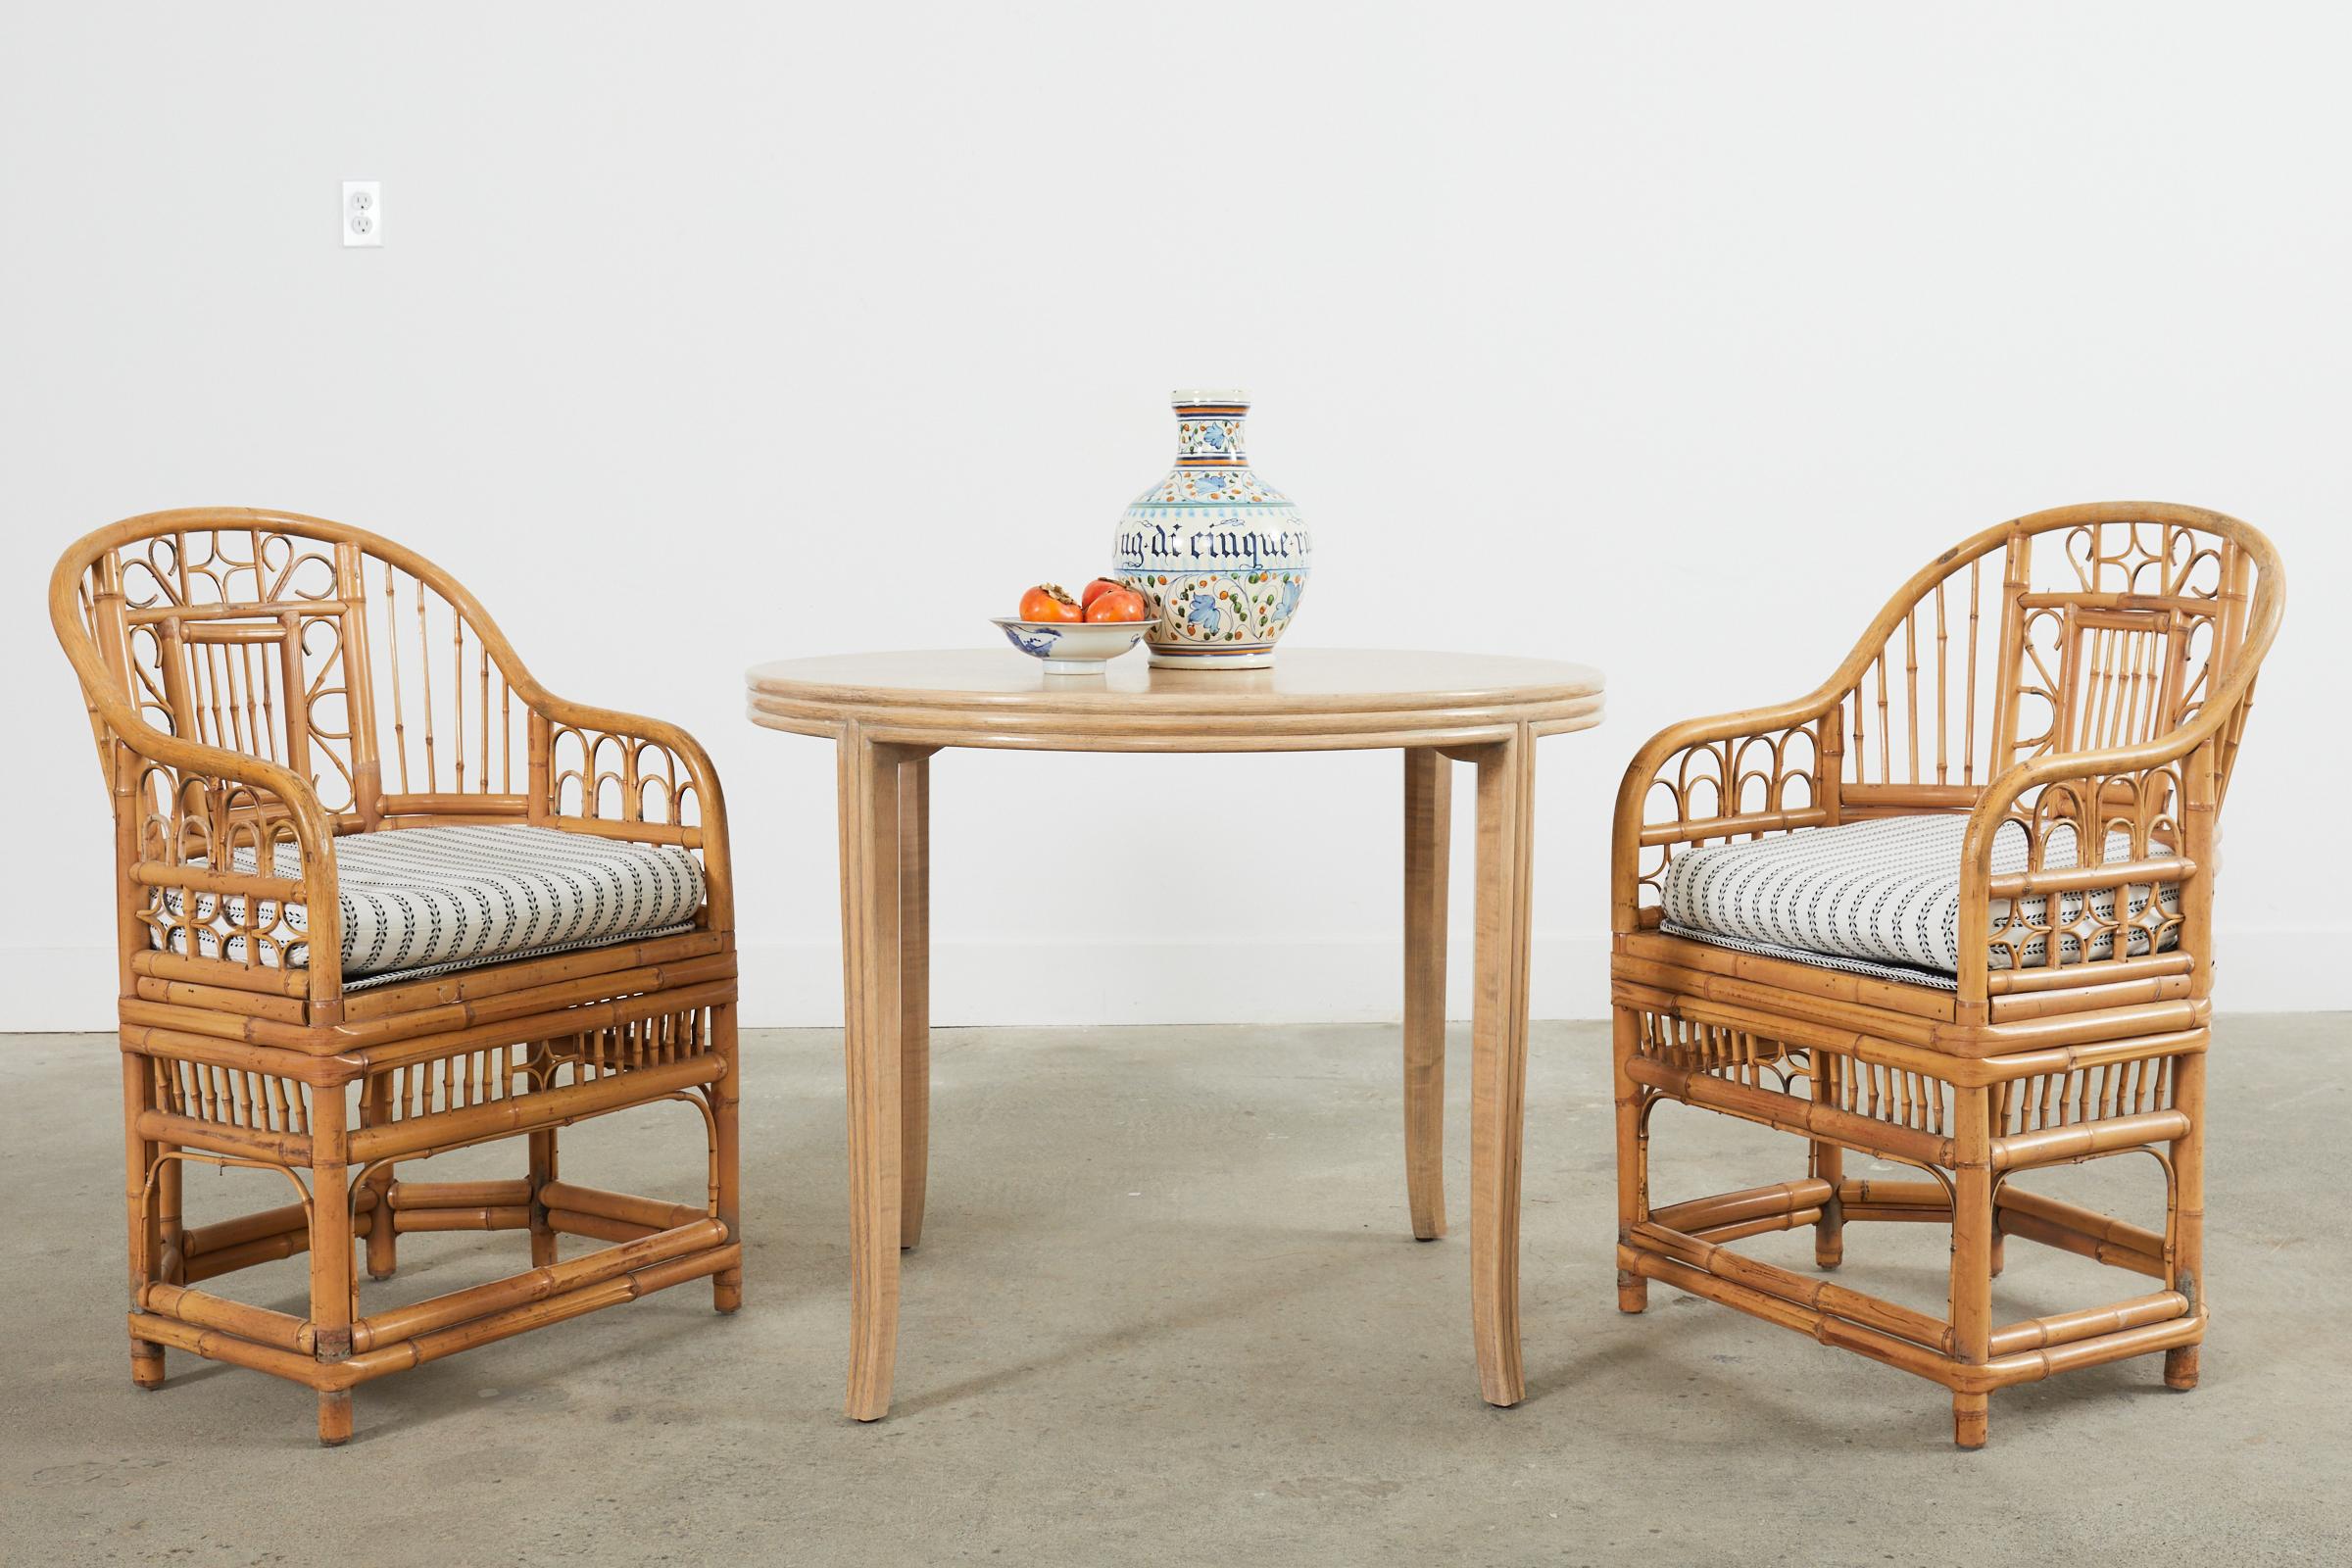 Étonnant ensemble de six fauteuils de salle à manger en rotin de bambou fabriqués dans le style du pavillon de Brighton. Les chaises sont ornées d'un motif chinois complexe, de type chippendale, réalisé à partir de bambou. La structure en forme de